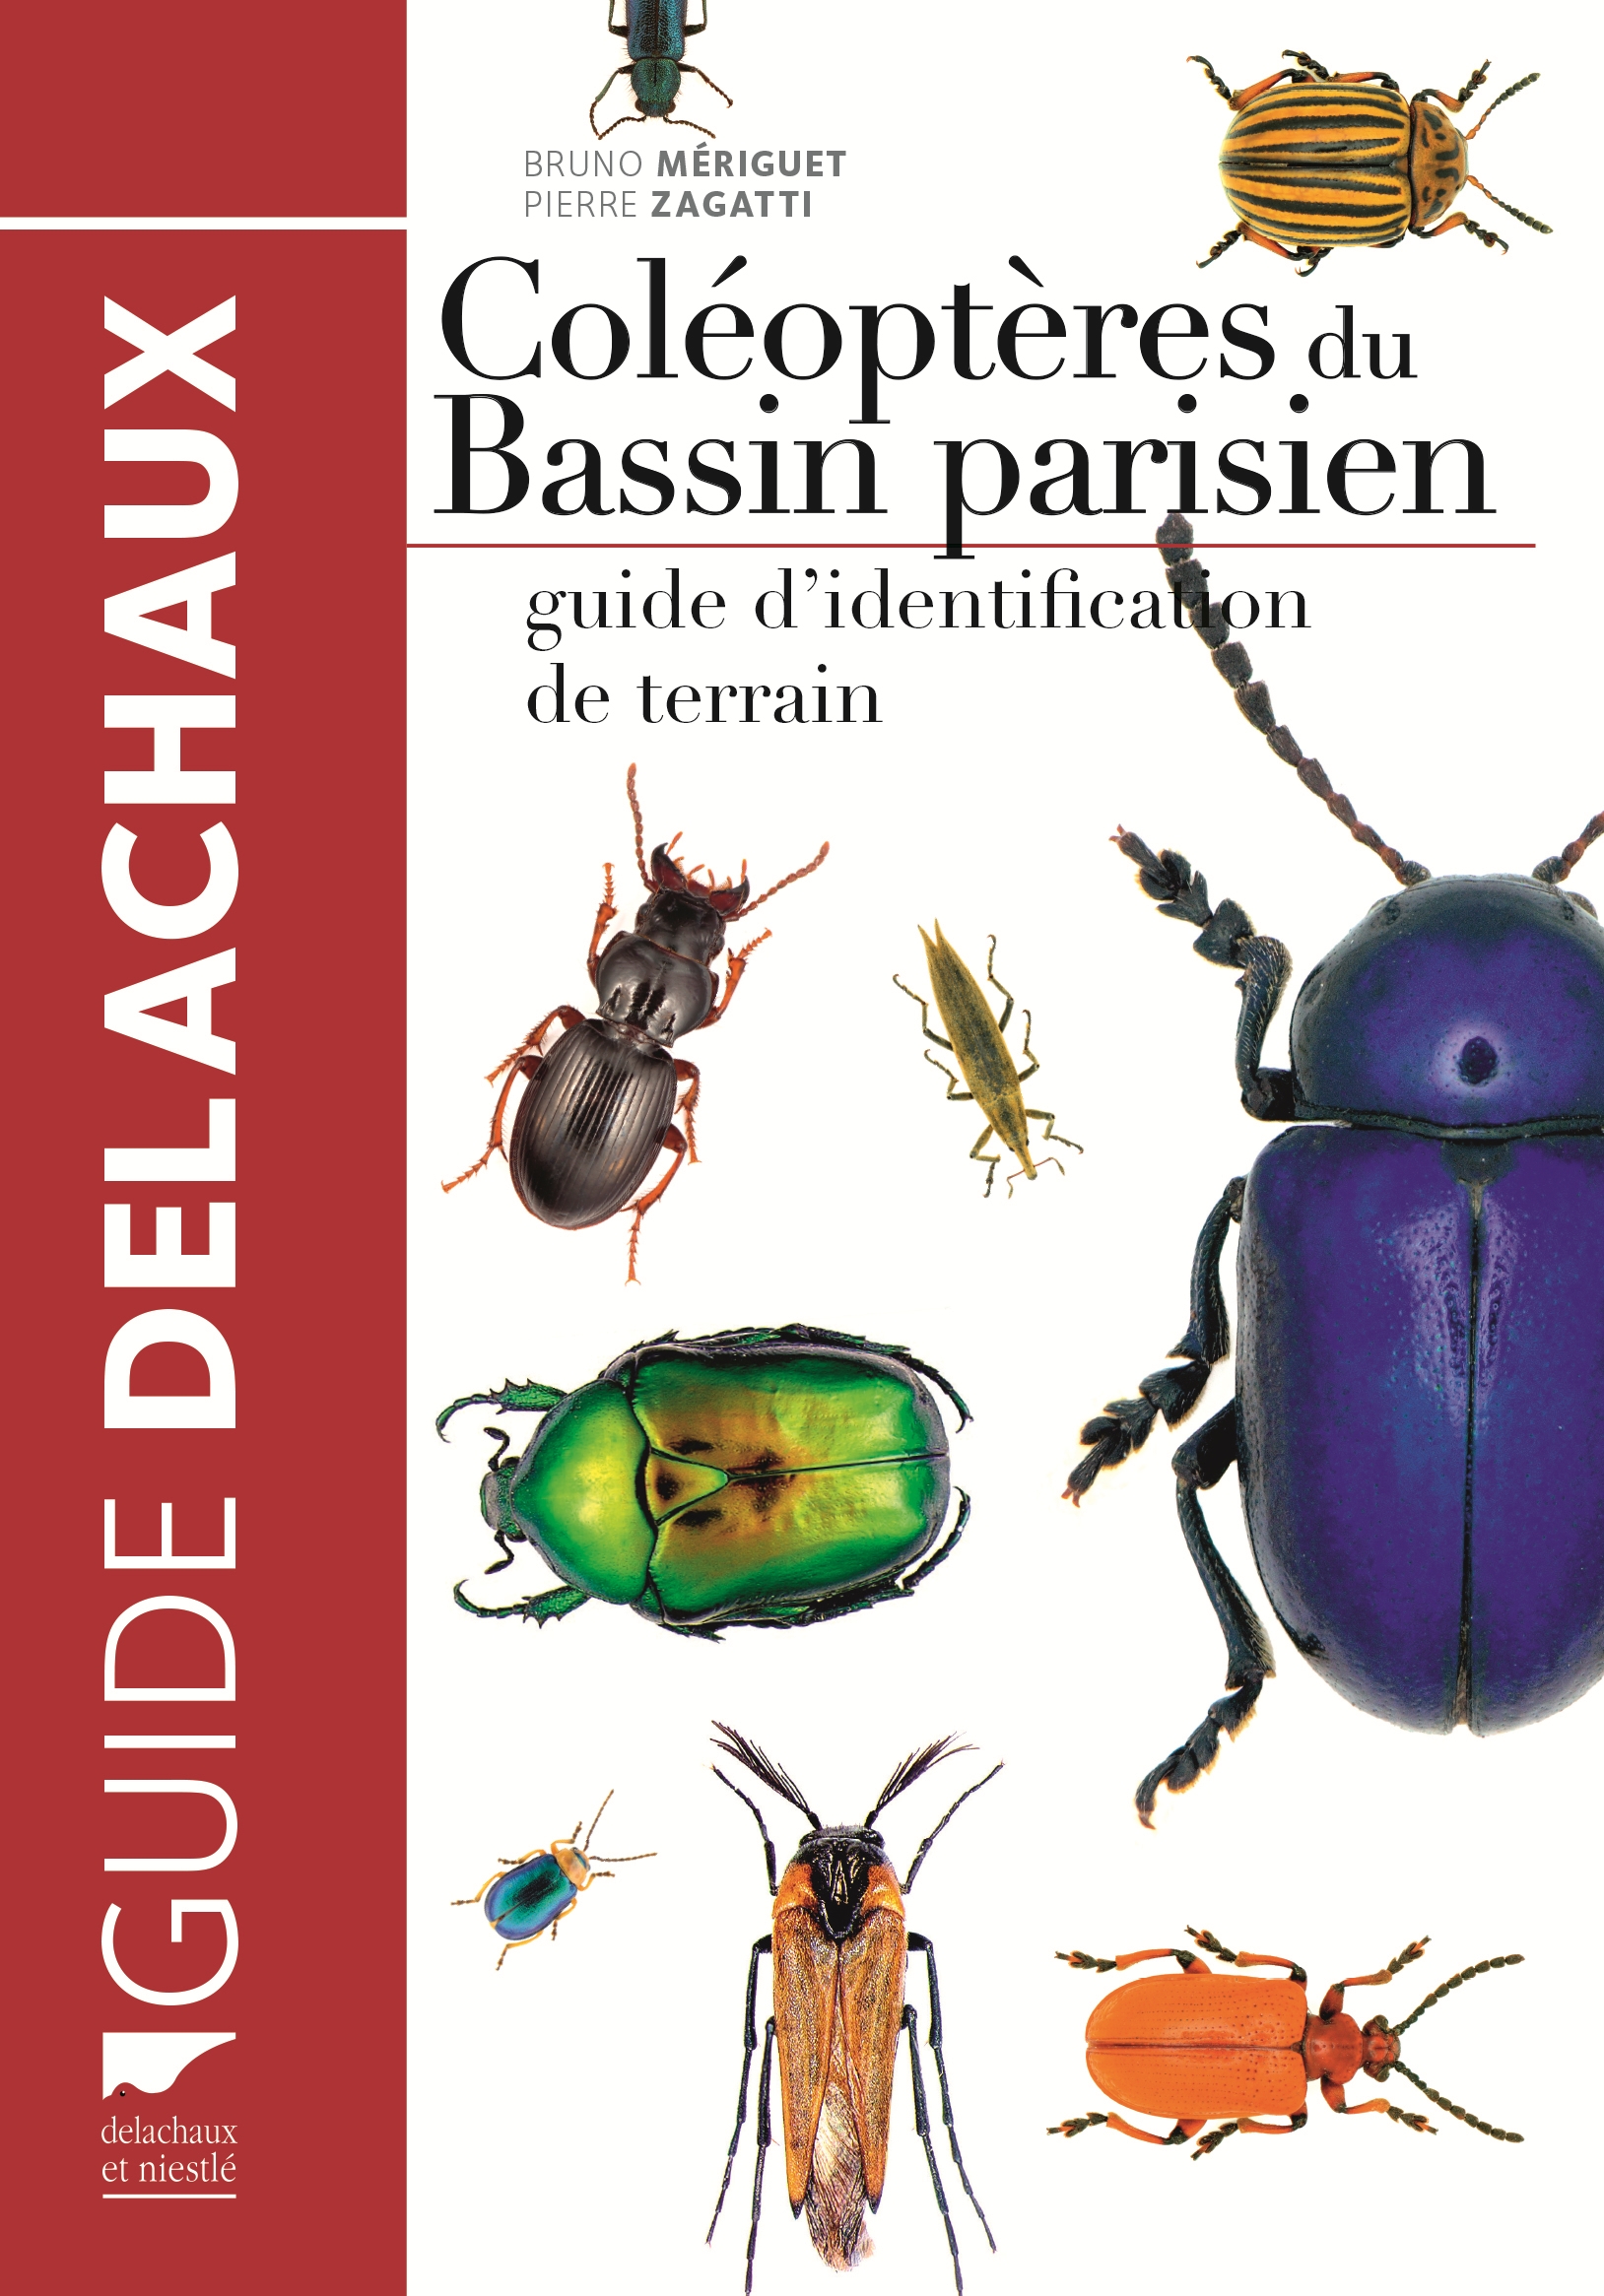 Cover of the book : Beetles of the Paris Basin (Source : B. Meriguet & P. Zagatti, Delachaux&Niestlé-2016)